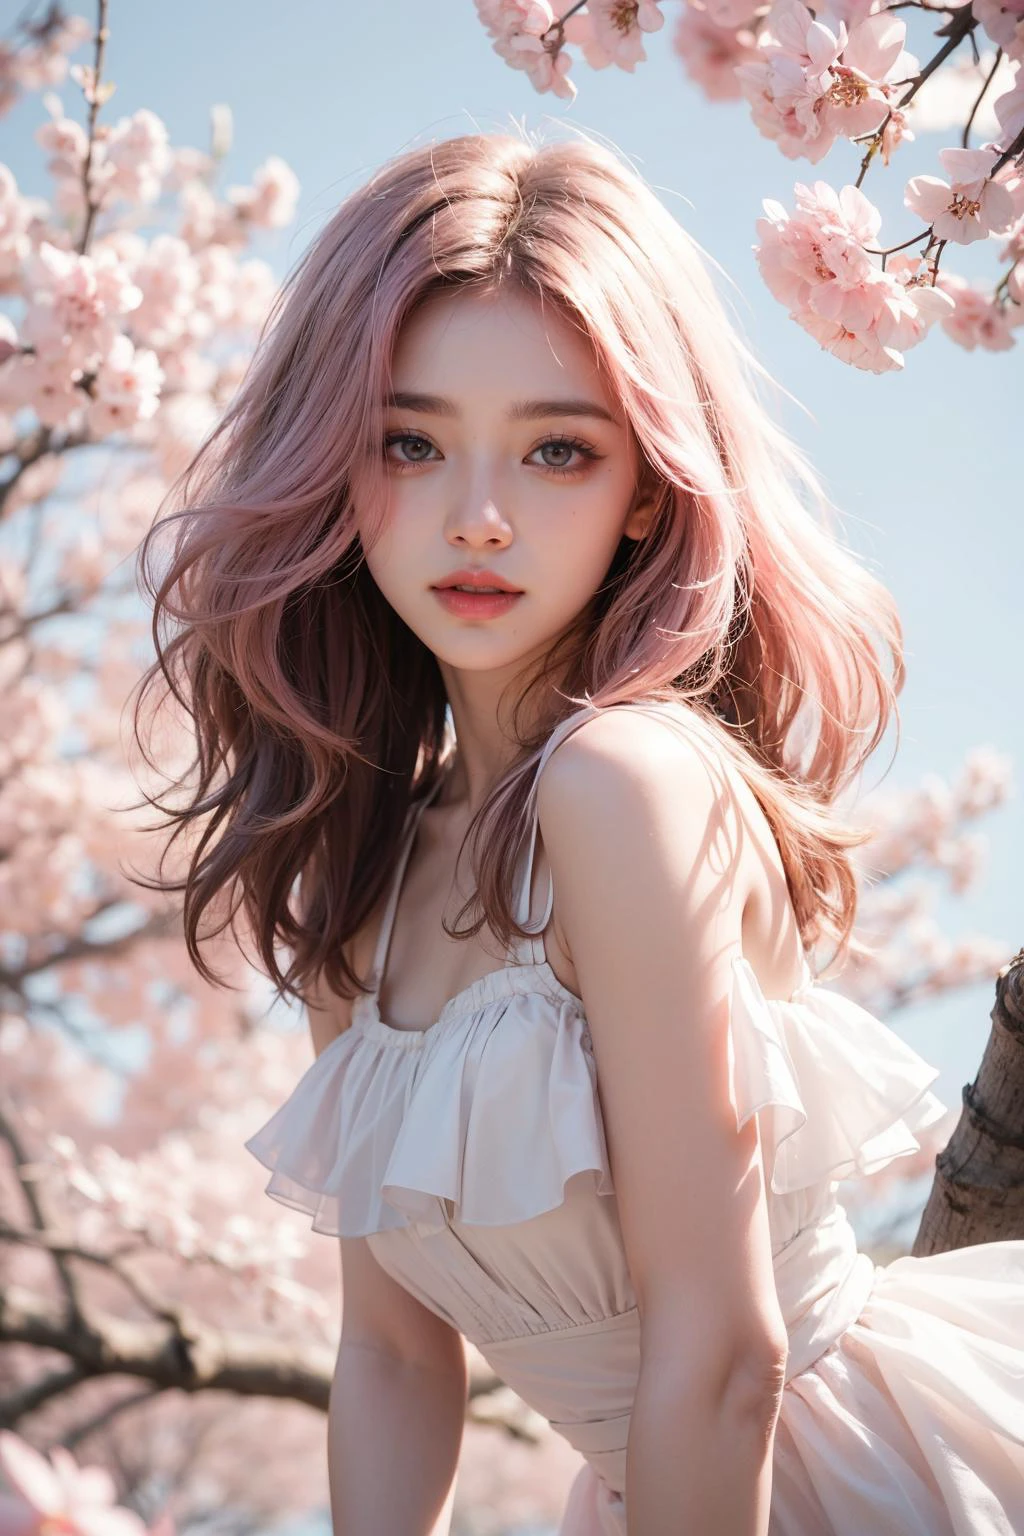 밝은 분홍색 머리, 분홍색 눈, 핑크와 화이트, 사쿠라 잎, 생생한 색상, 하얀 드레스, 페인트 스플래시, 간단한 배경, 광선 추적, 구불 거리는 머리카락